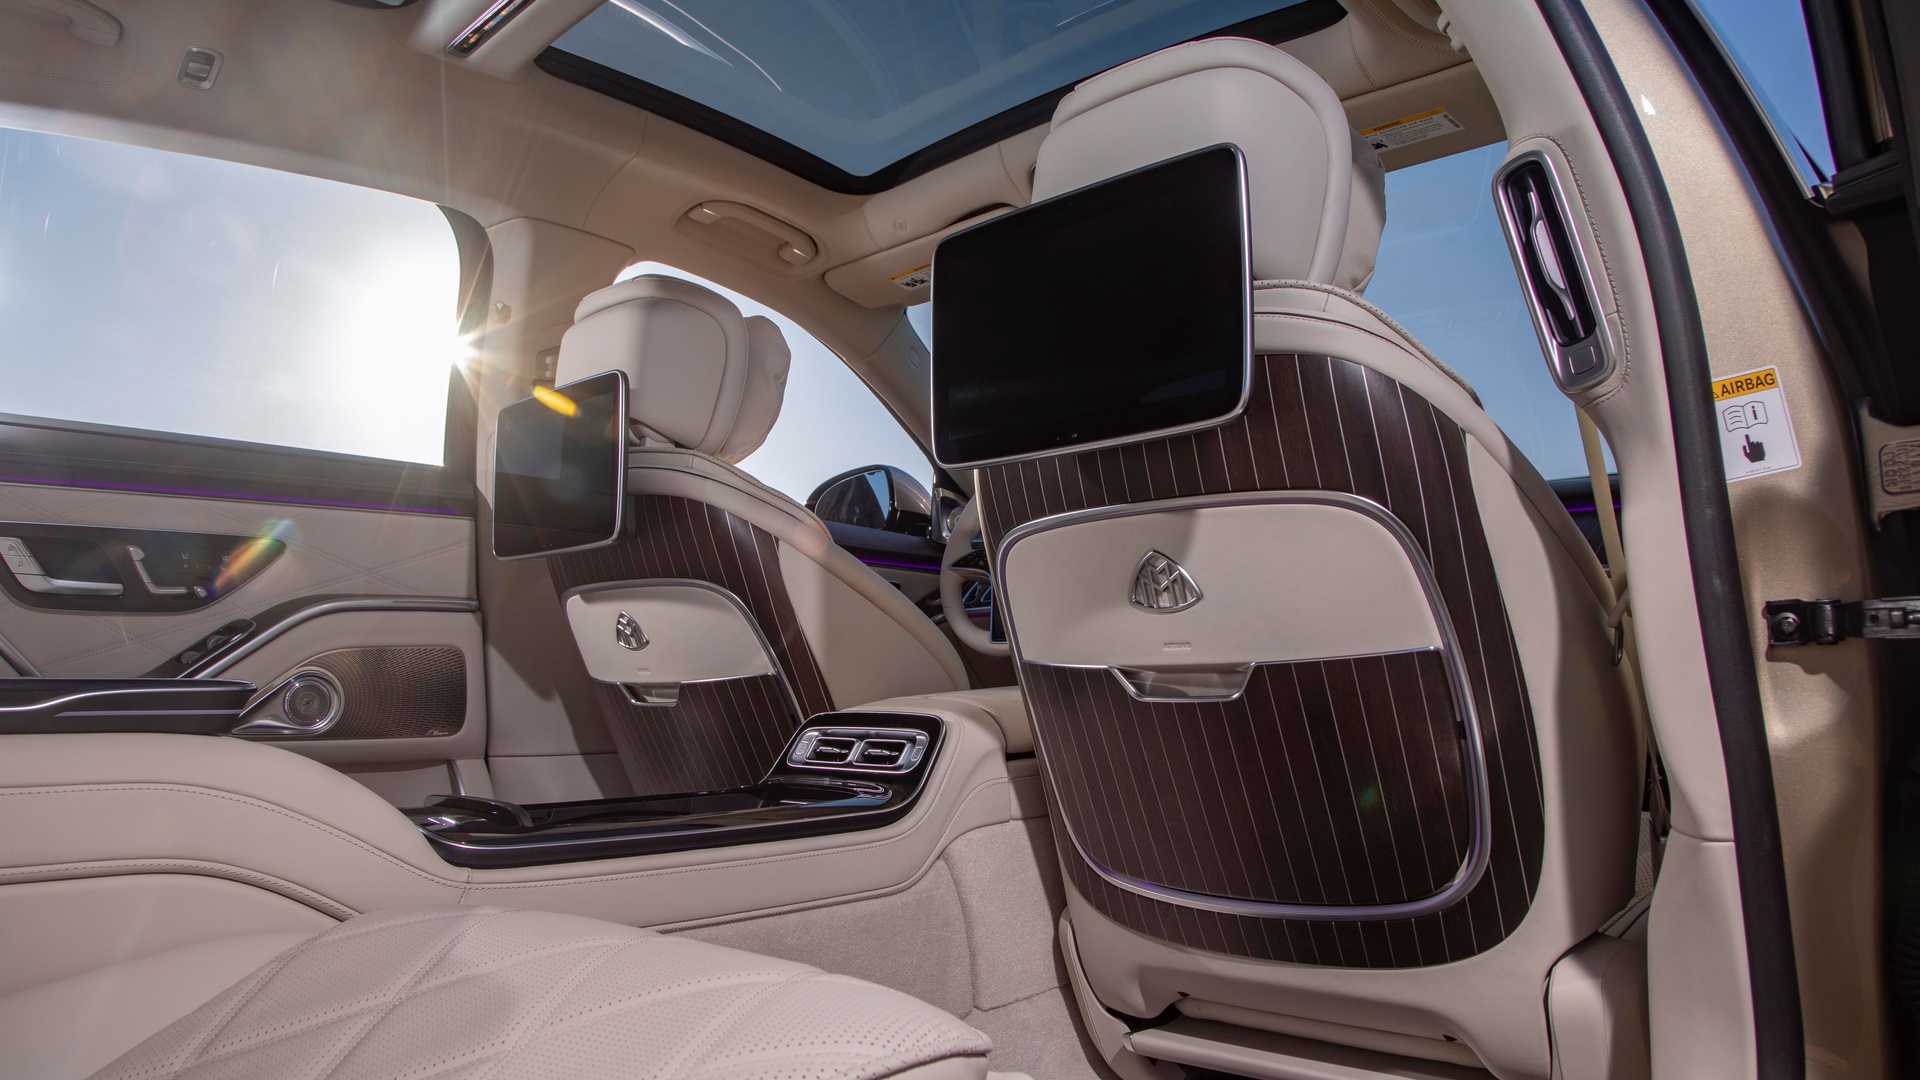 Mercedes-Maybach triedy S posúva luxus do extrémov